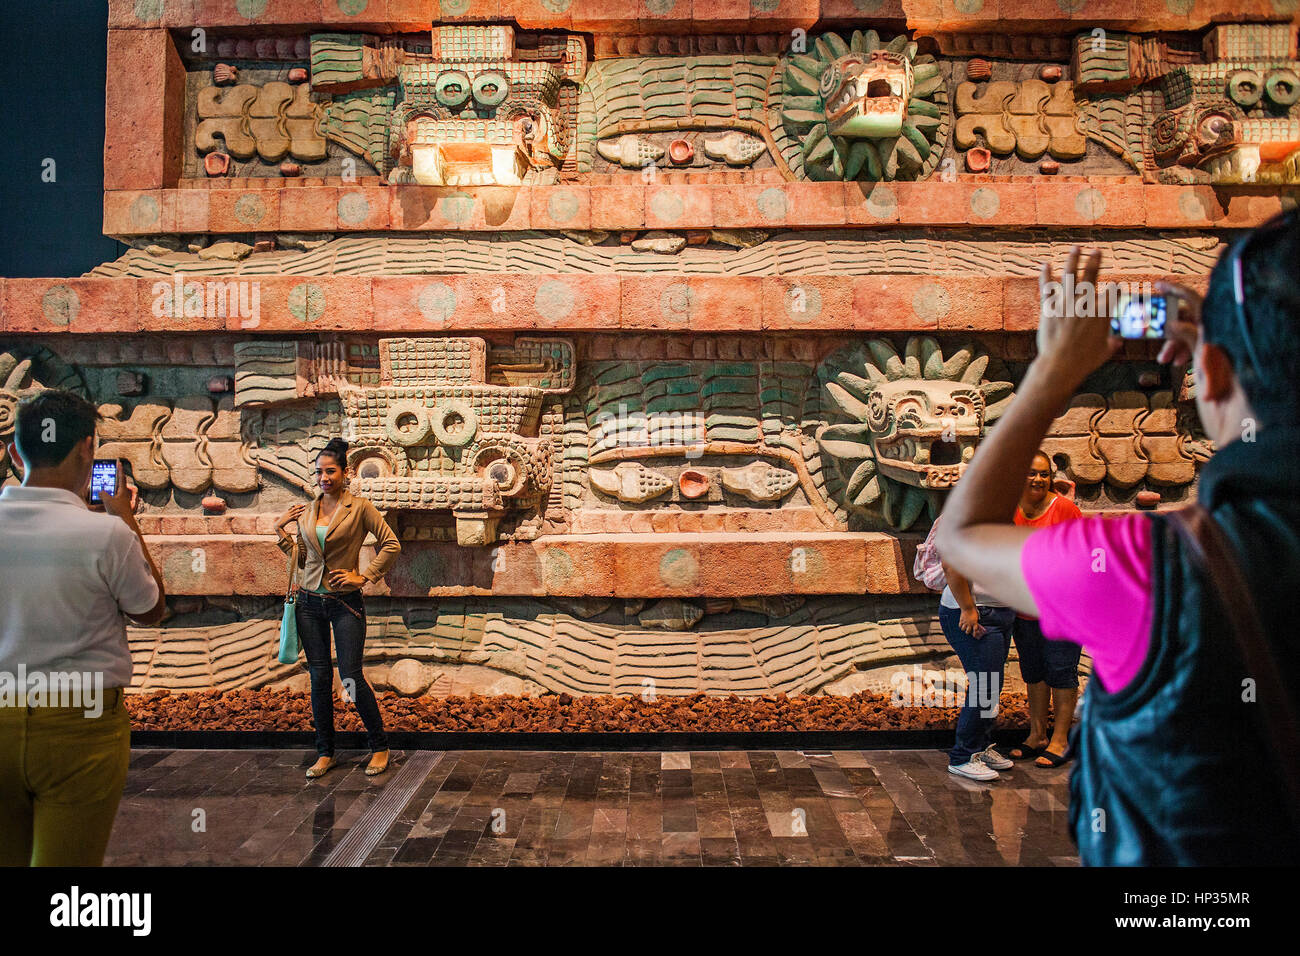 Réplique, Piramide de la serpiente emplumada, Pyramide du serpent à plumes, ou serpent, de Teotihuacan, Musée national d'anthropologie. Mexico. Banque D'Images